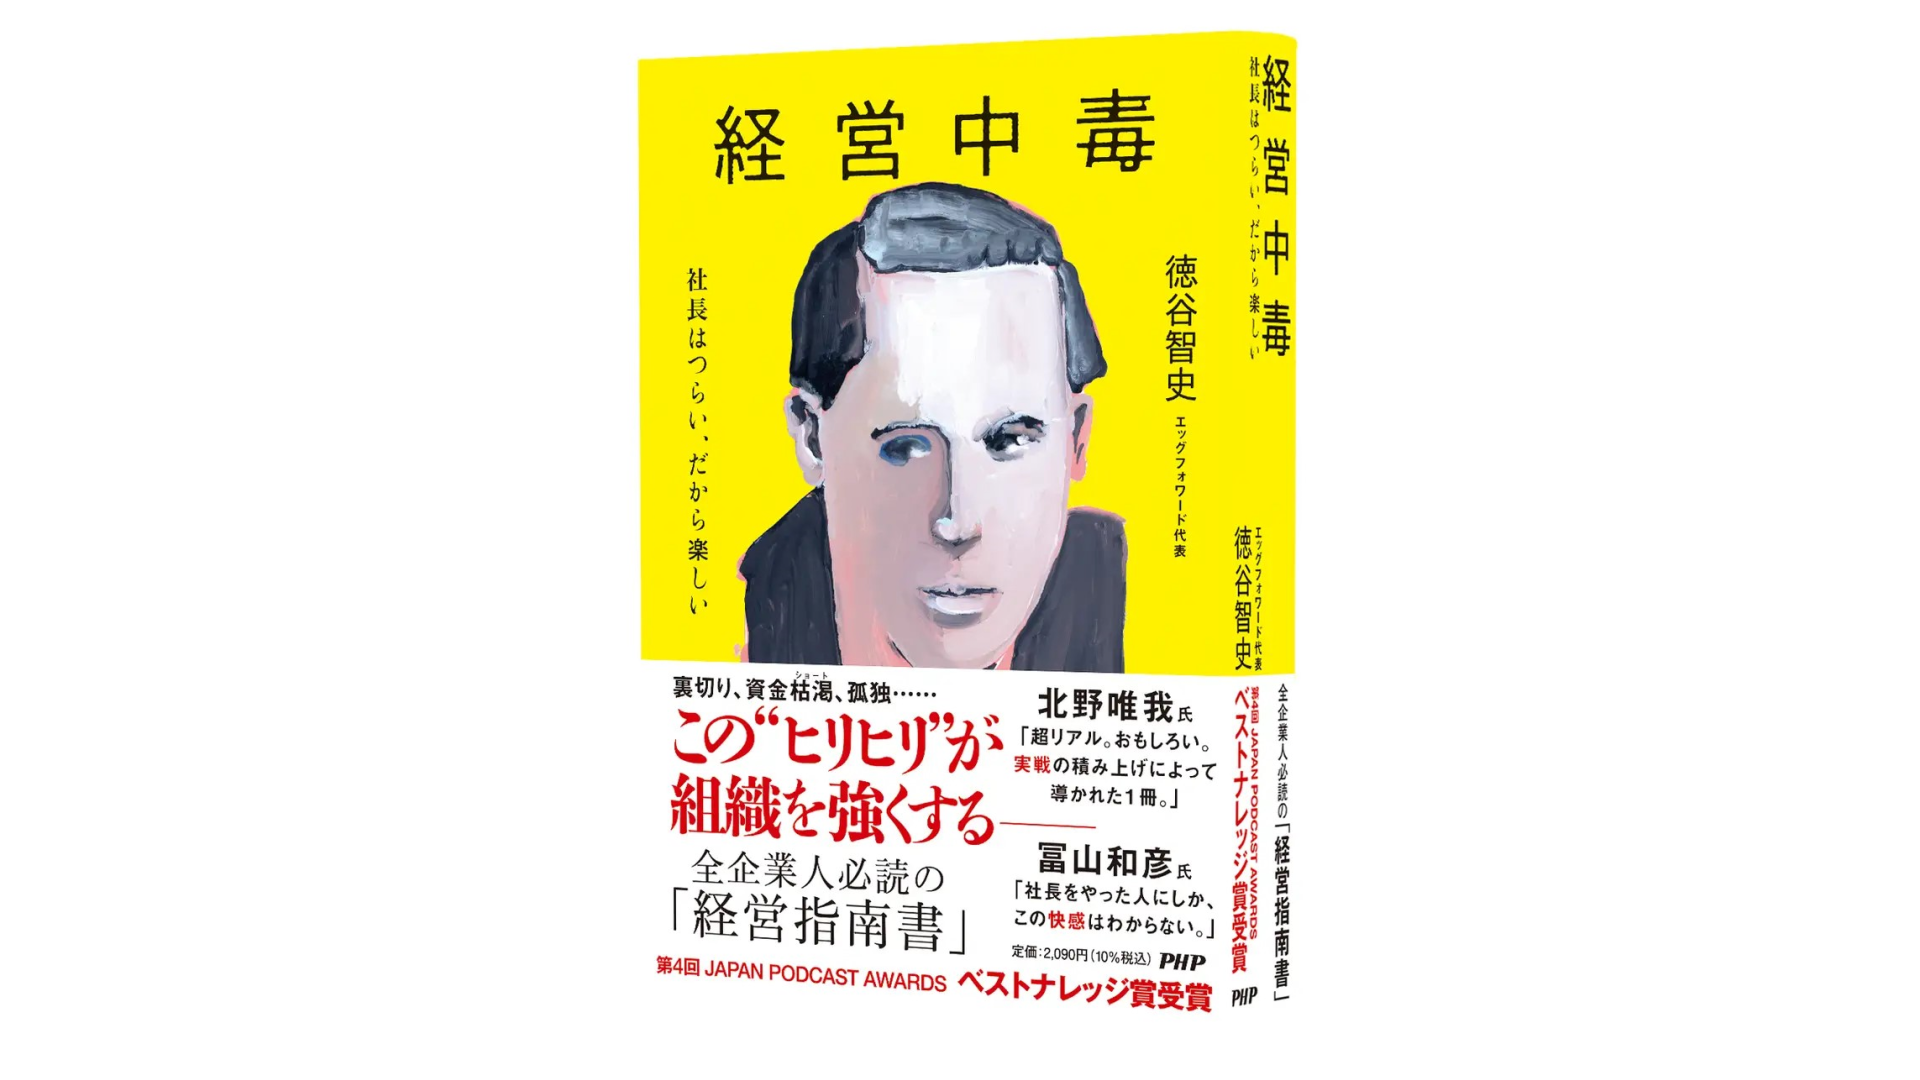 徳谷智史氏の著書『経営中毒』がビジネス書の聖地で3か月連続総合1位。人気ポッドキャストの書籍化